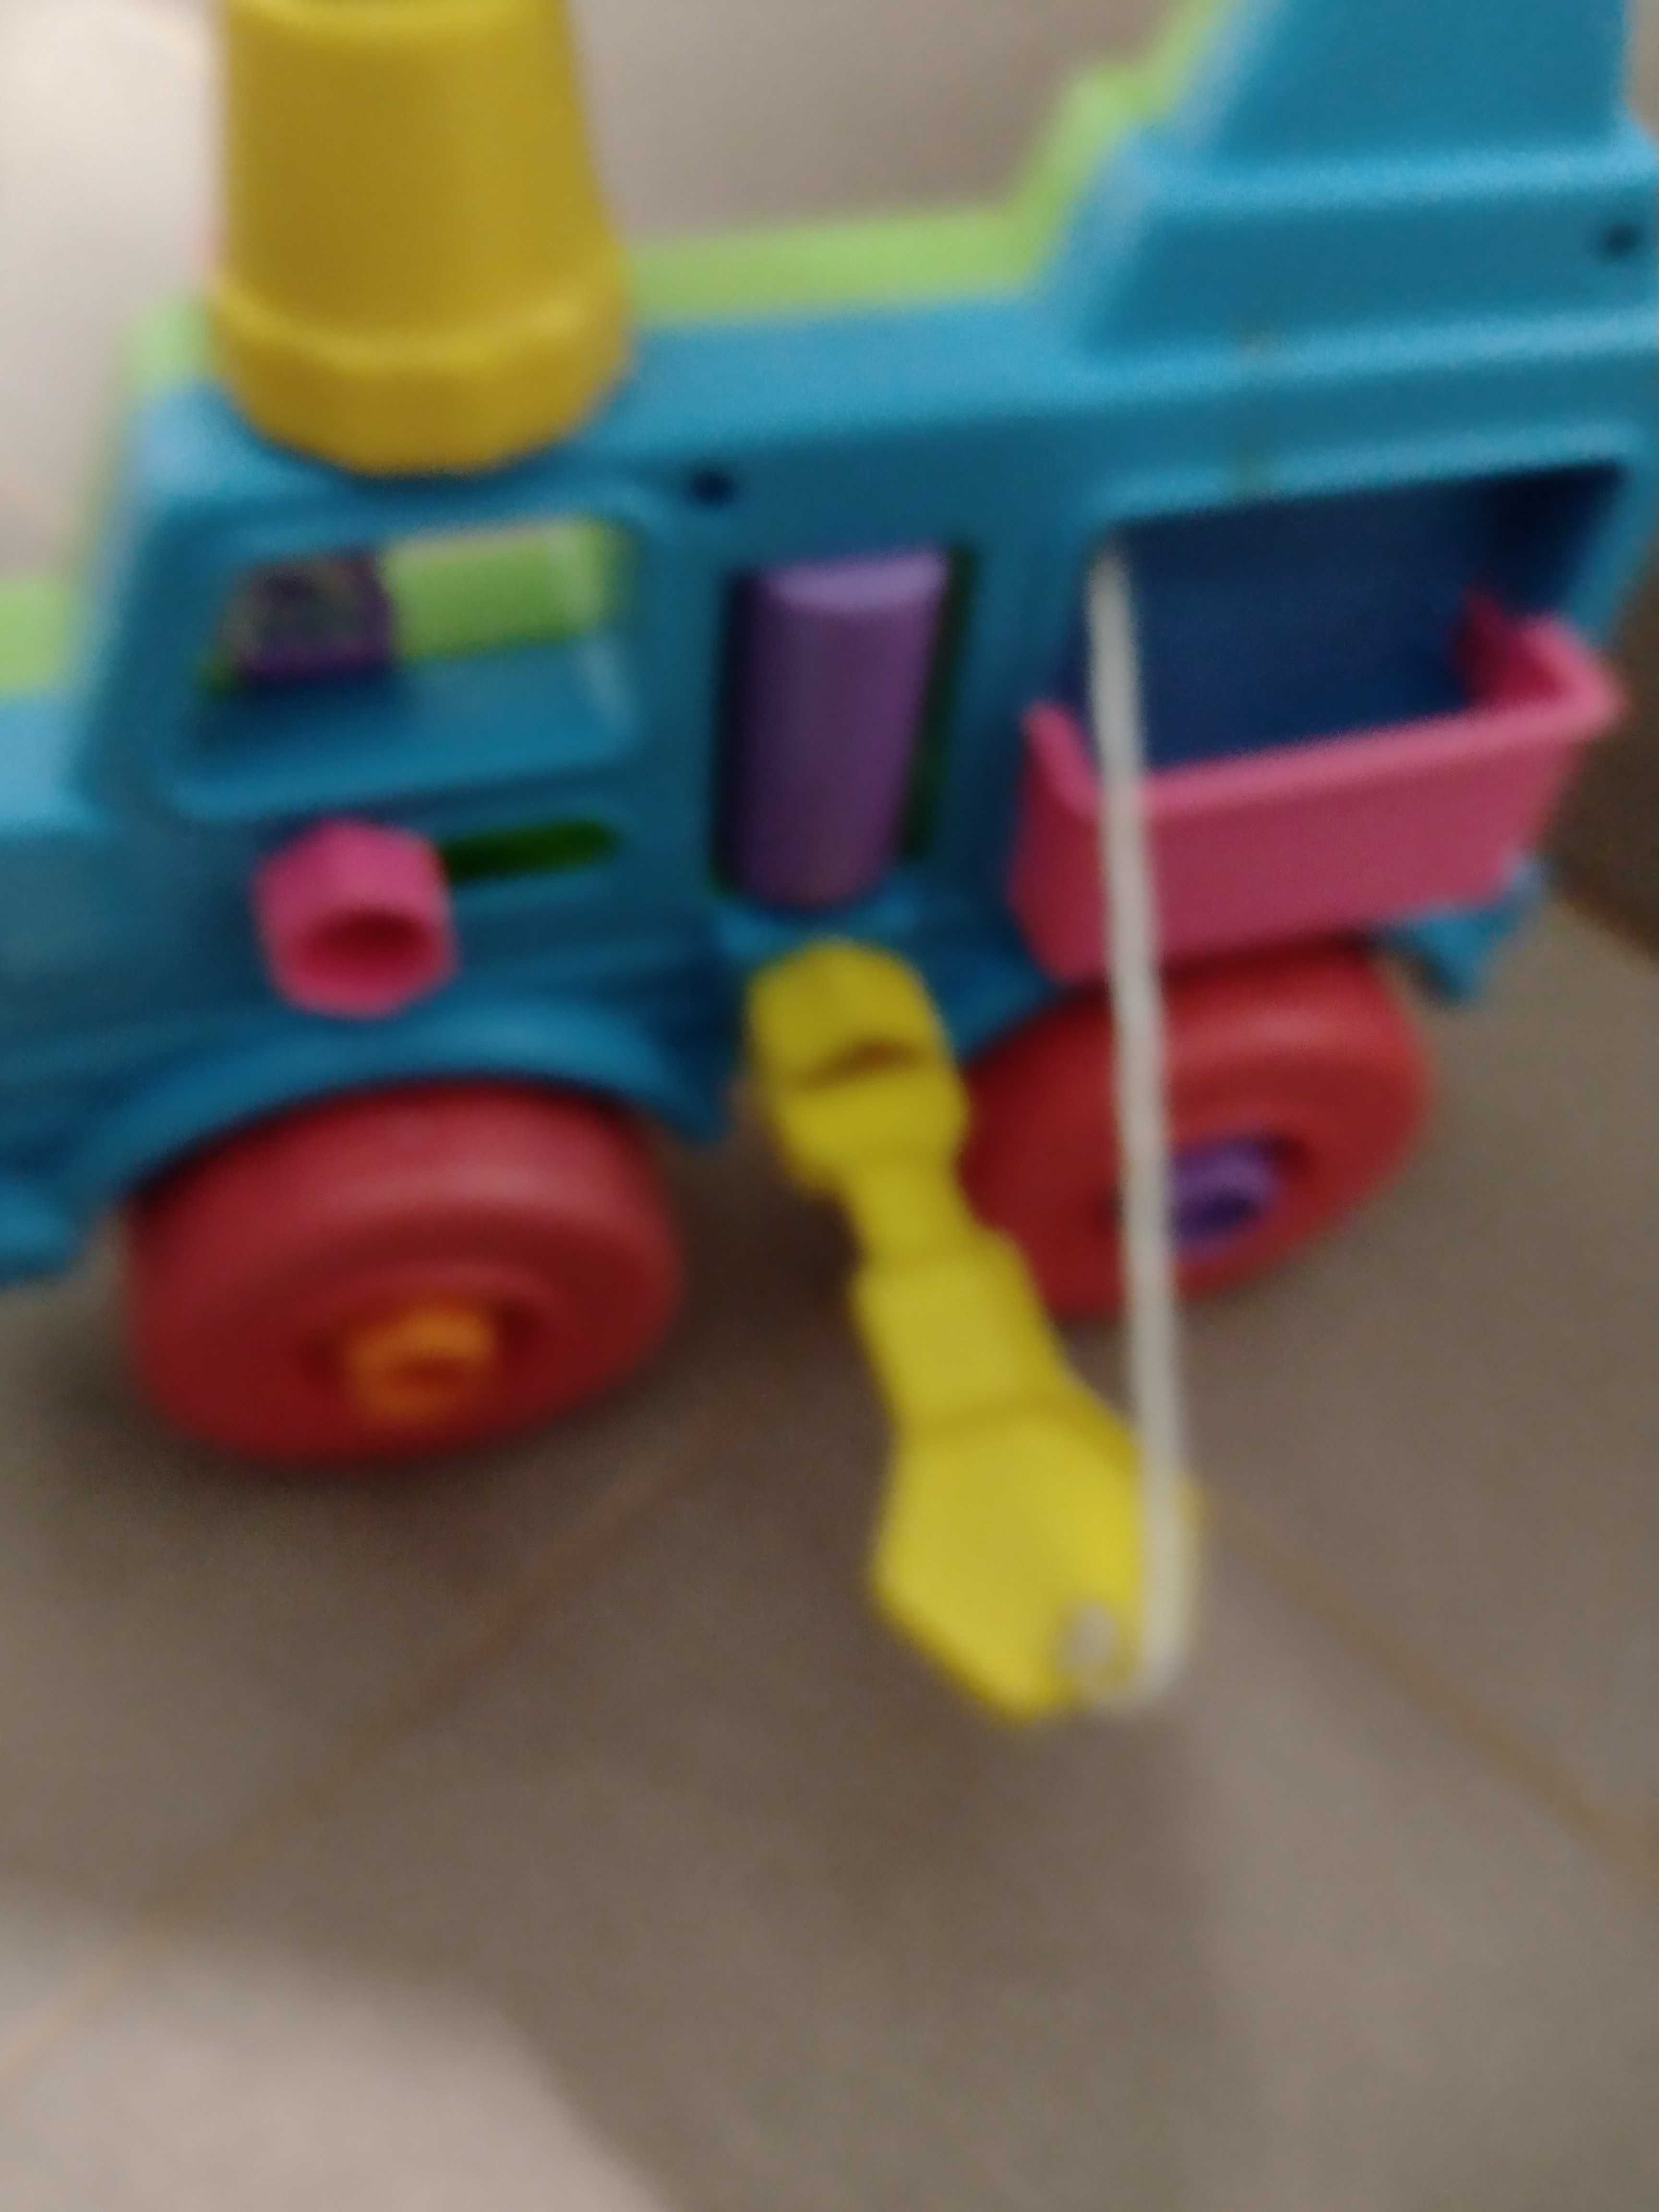 Samochód zabawka z funkcjami manualnymi.